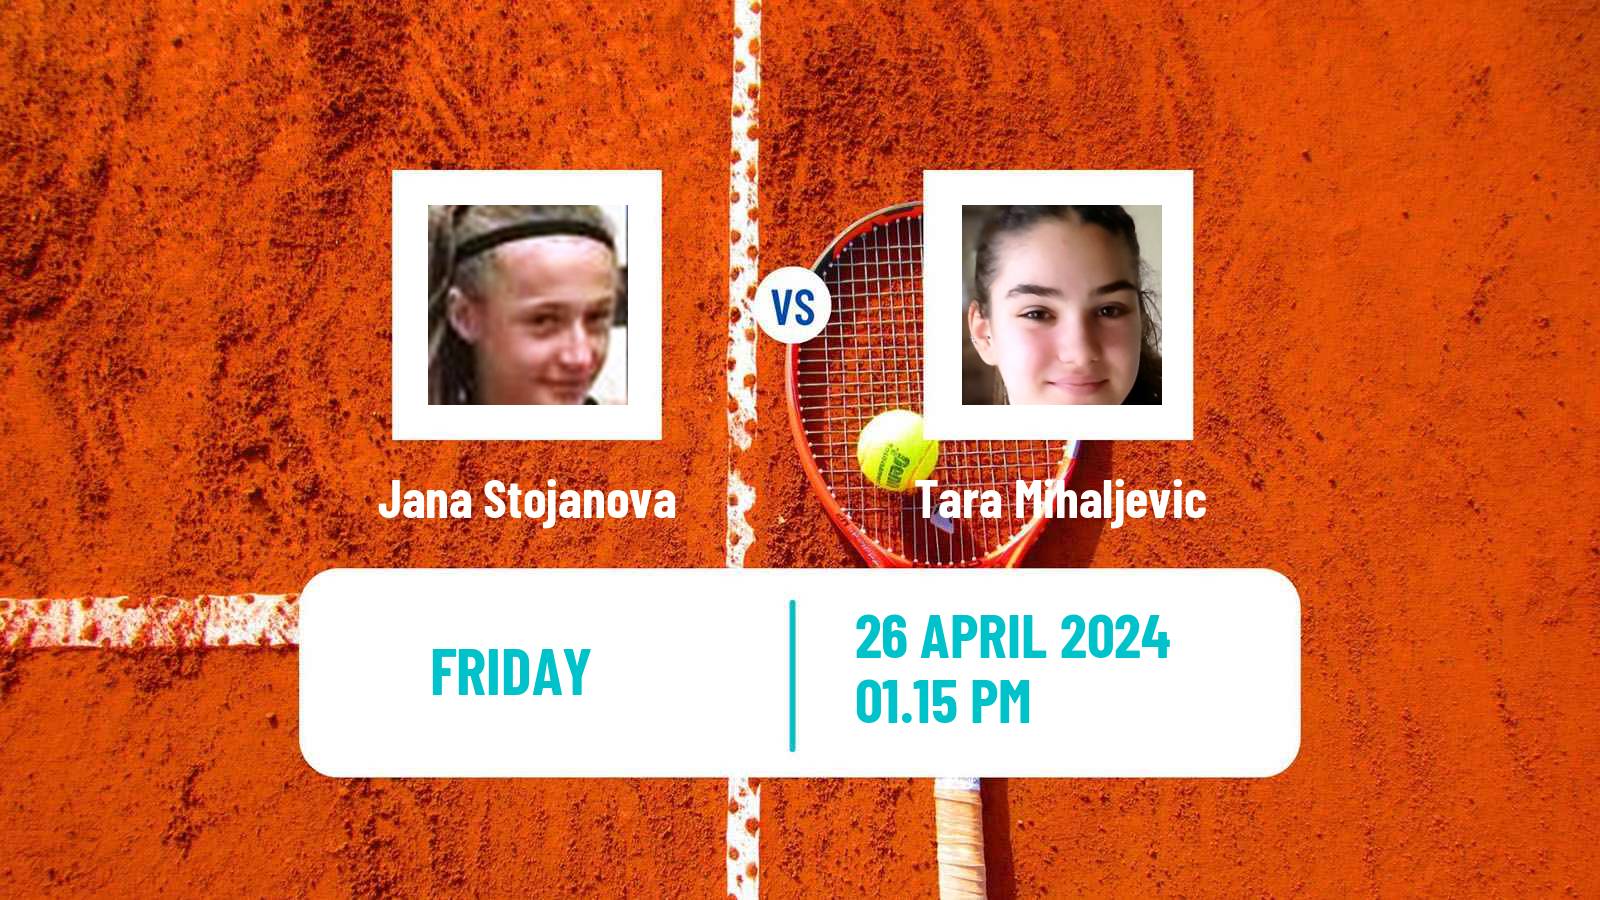 Tennis ITF W15 Kursumlijska Banja 2 Women Jana Stojanova - Tara Mihaljevic